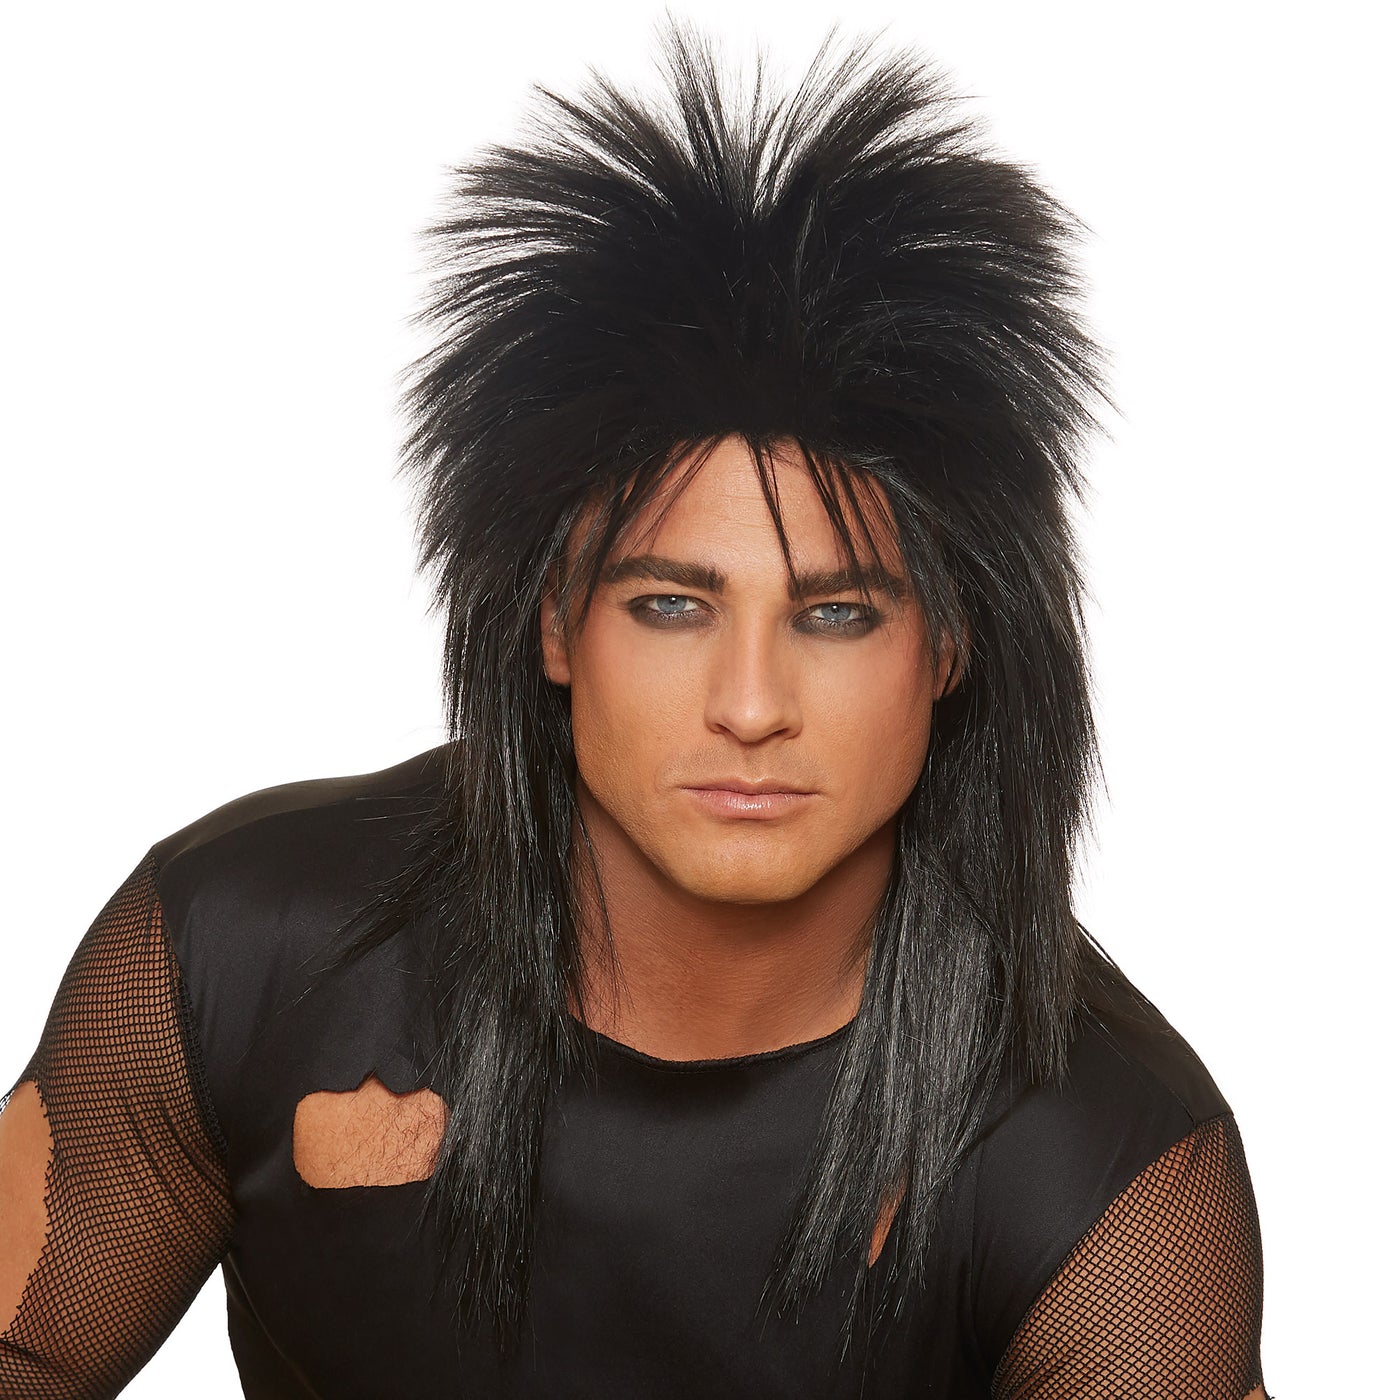 Unisex Rocker Wig